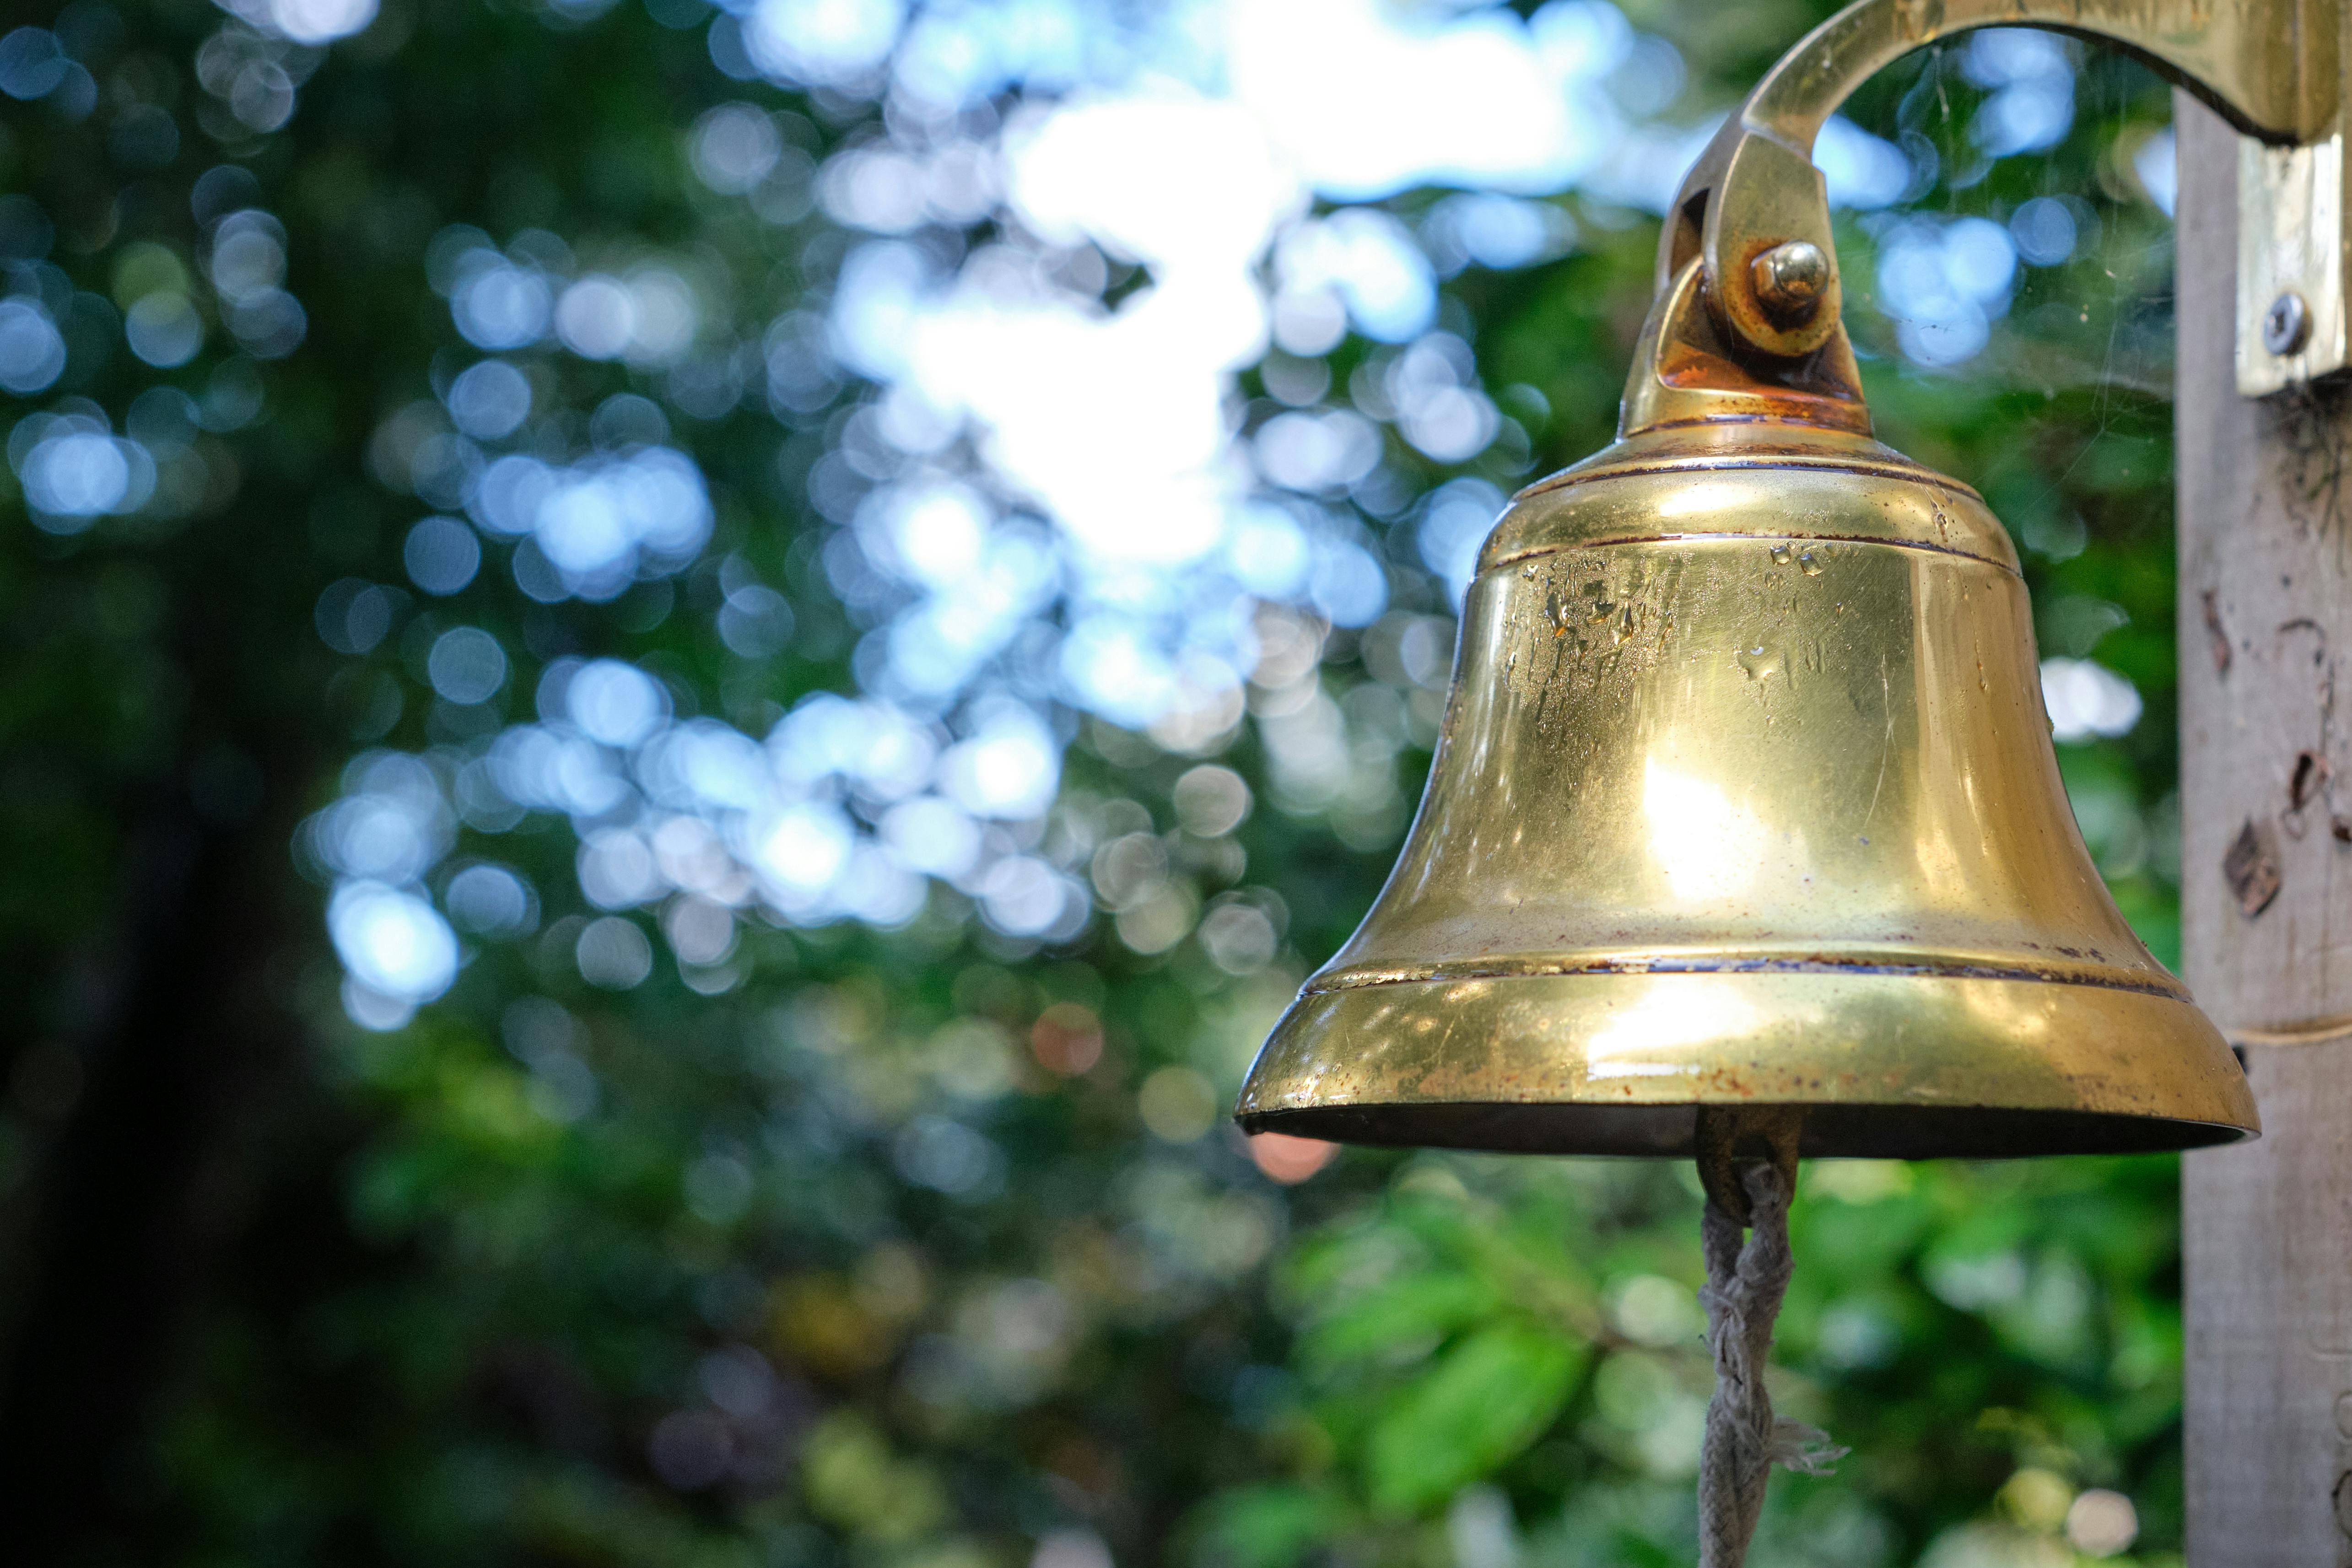 Closeup of an Outdoor Brass Bell · Free Stock Photo